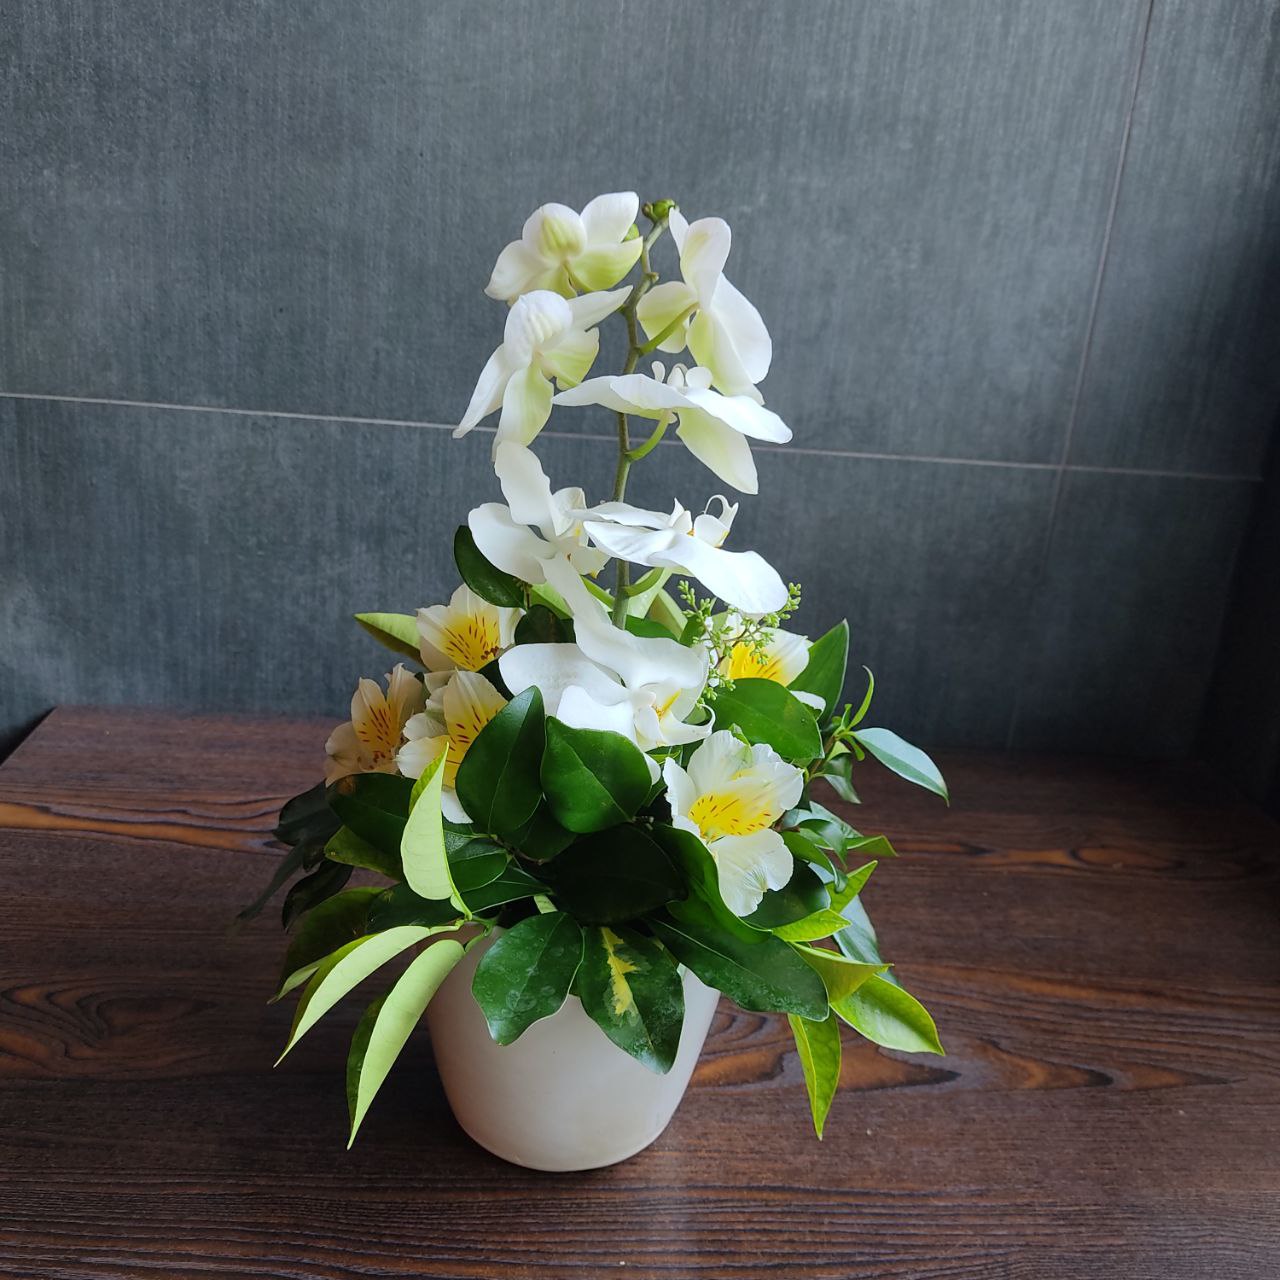 سفارش و خرید آنلاین باکس گل گلدان سرامیک طرح ندا از اطلس گل شیراز .